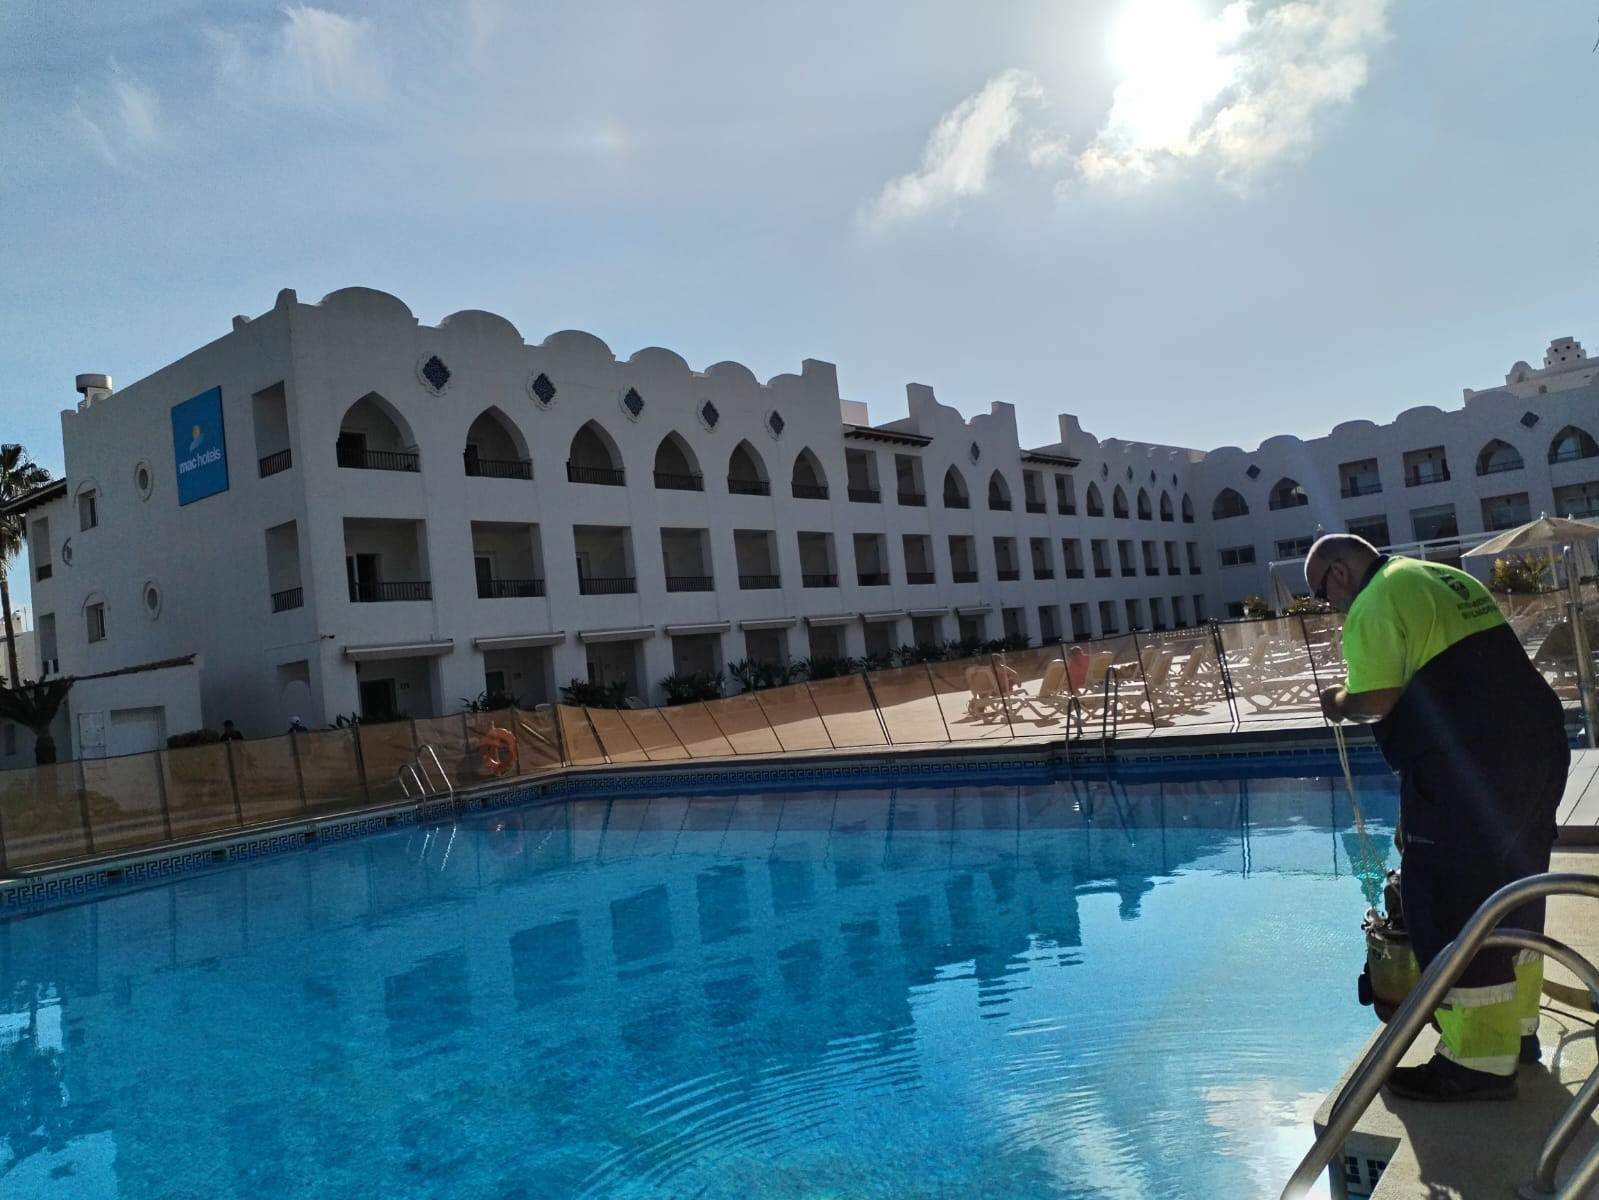 Benalmádena (Málaga) recibe 320.000 litros más de agua de otro hotel y una comunidad tras el vaciado de su piscina